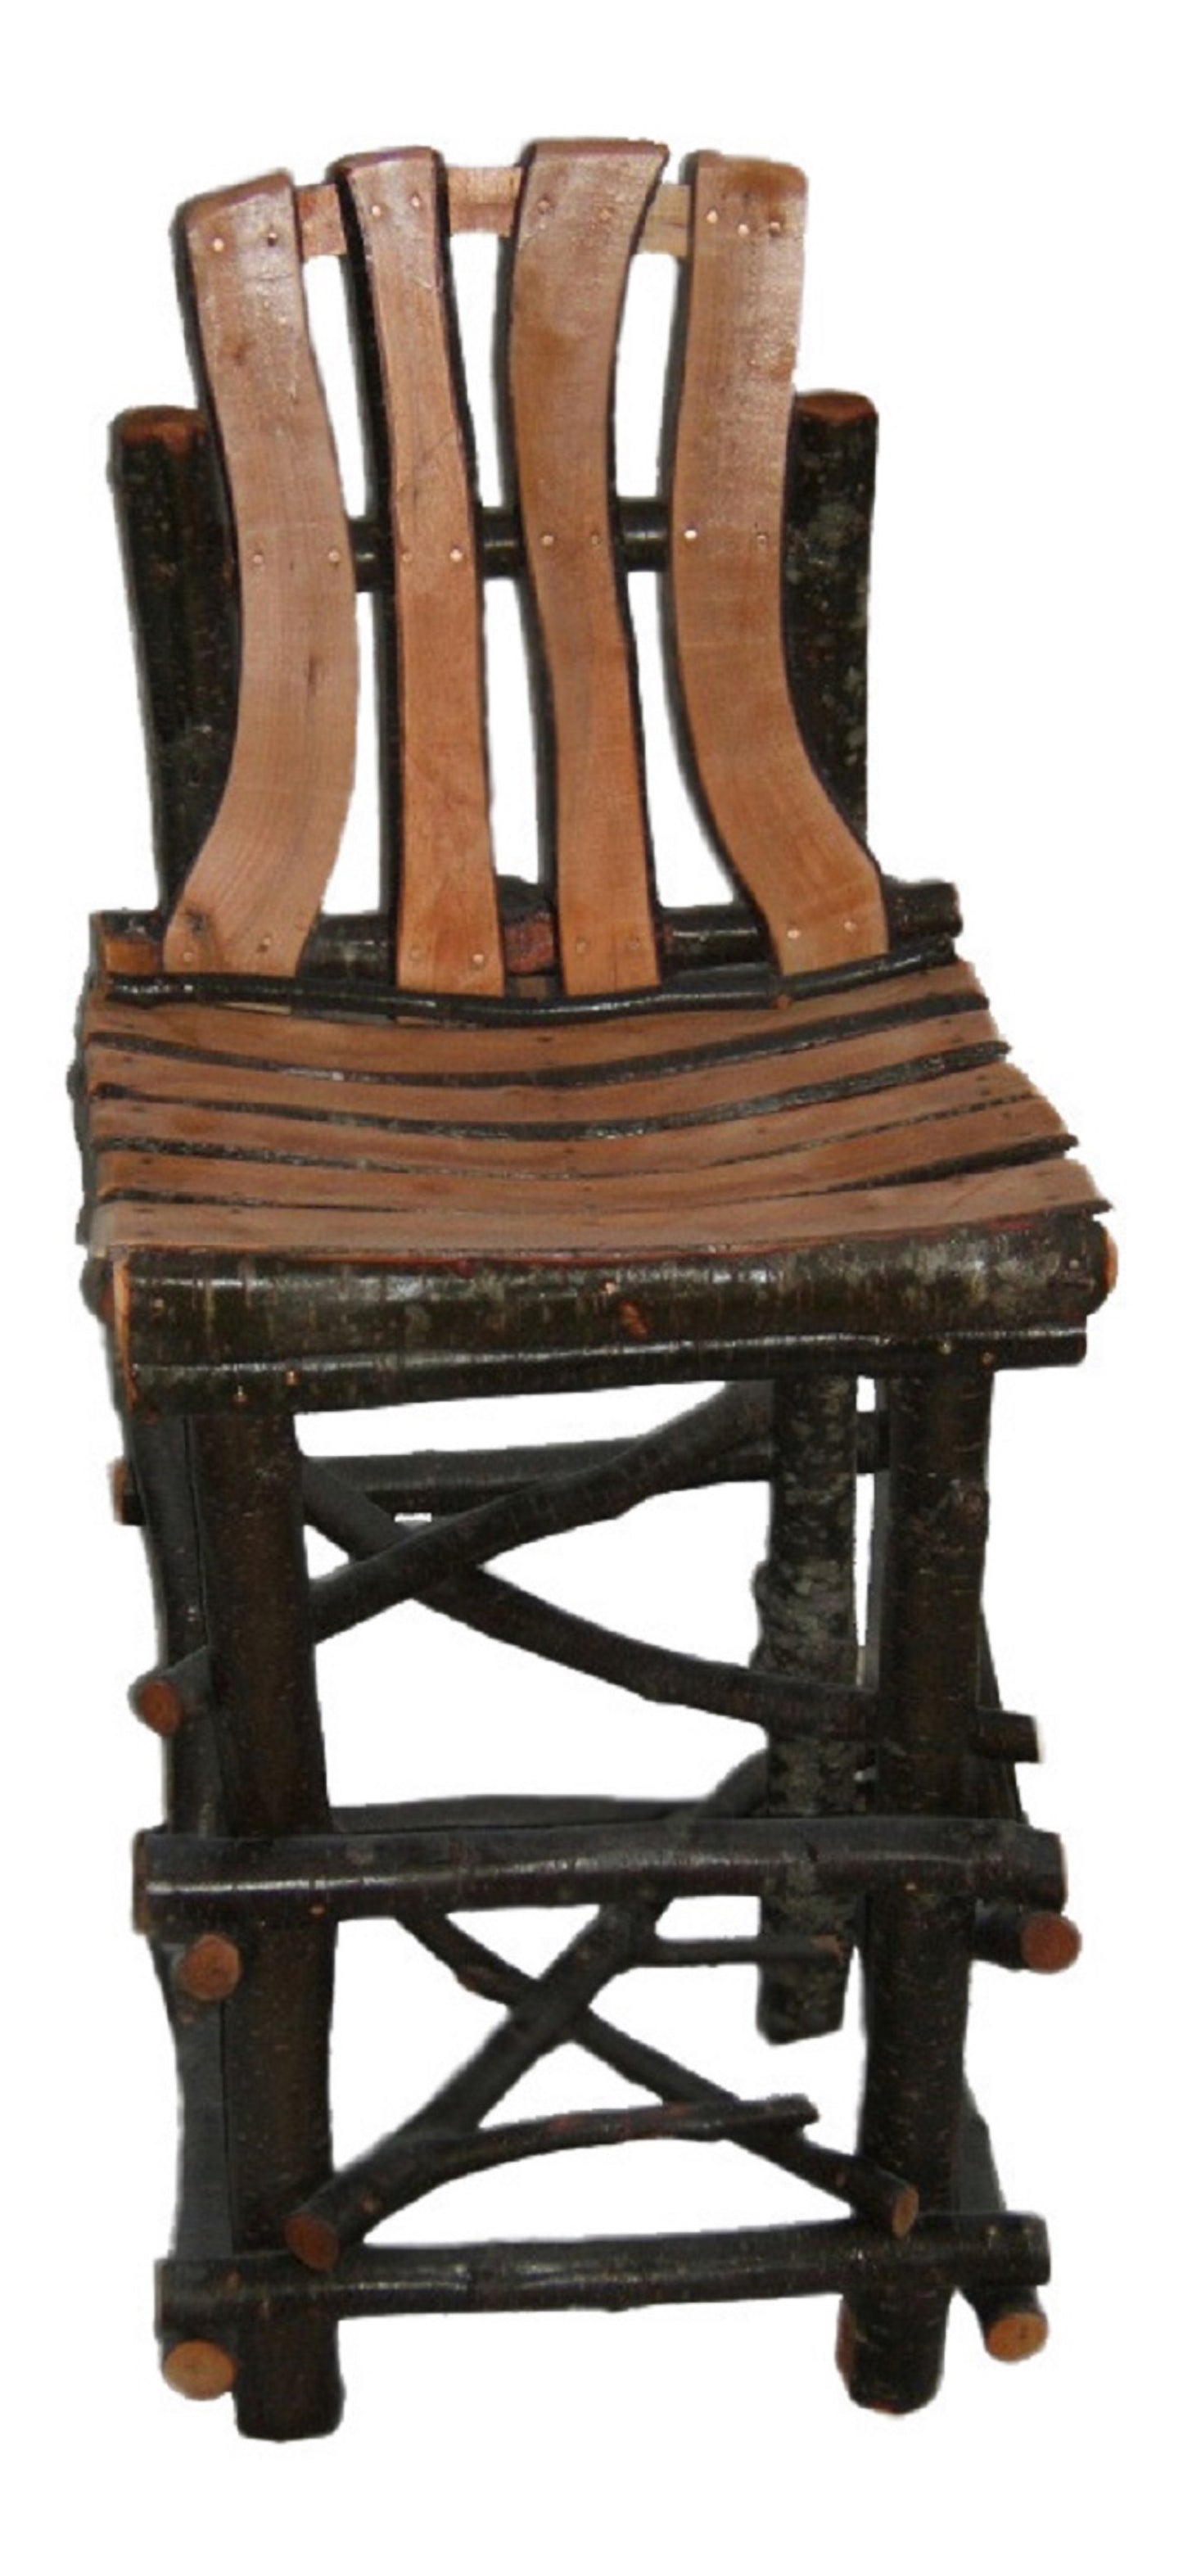 Log & Twig Bar stool